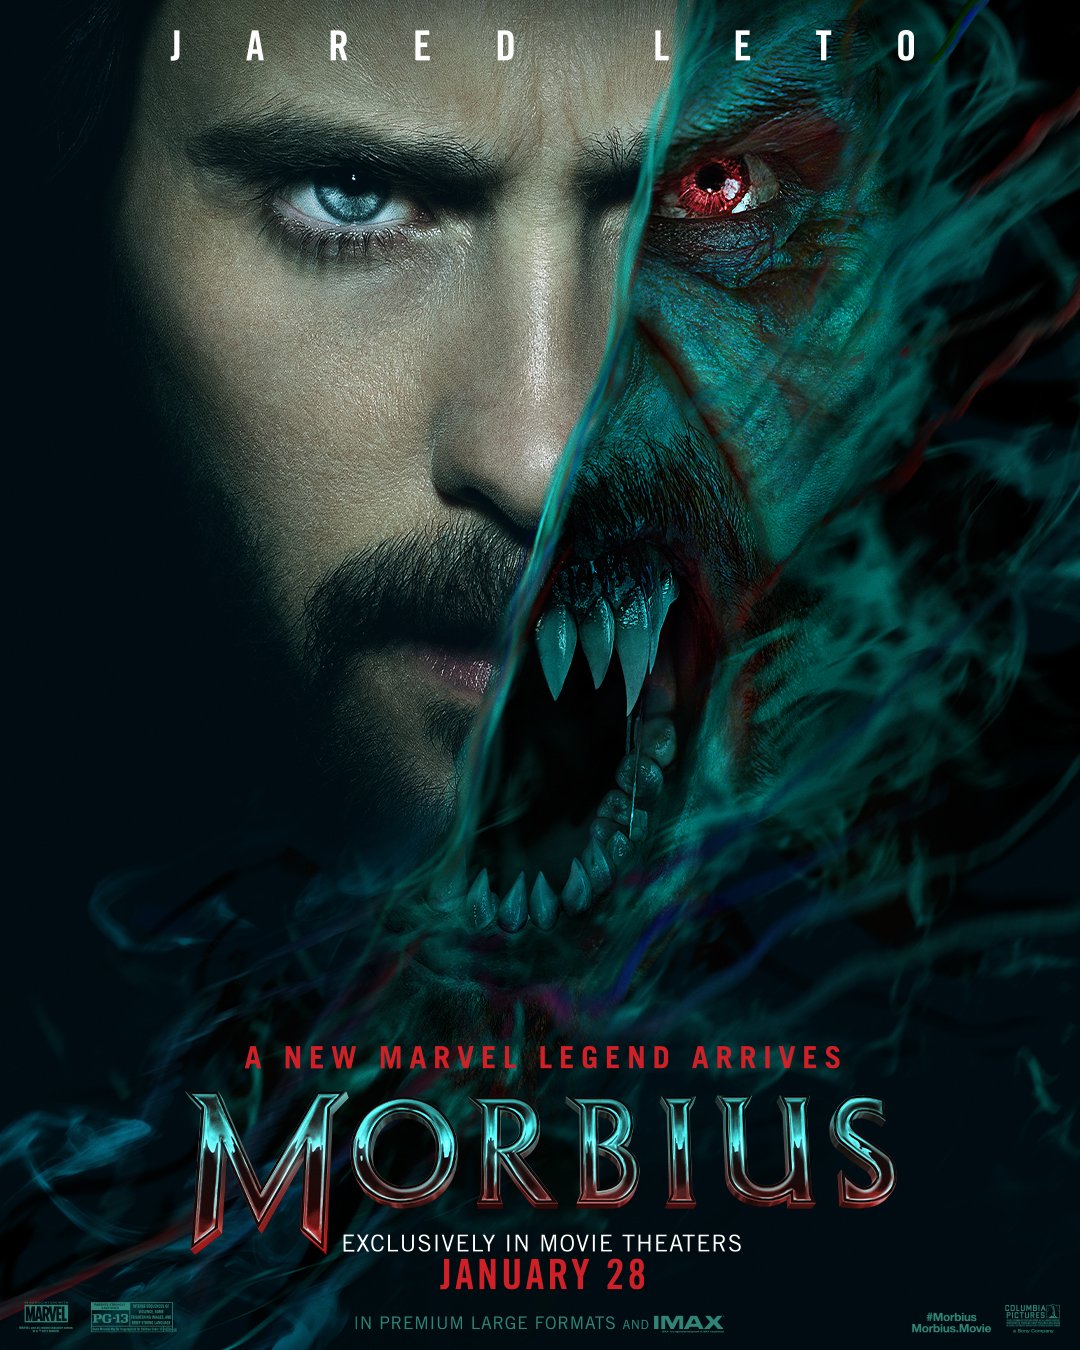 Morbius | Sony Pictures divulga pôster e cena da transformação na CCXP World 2021